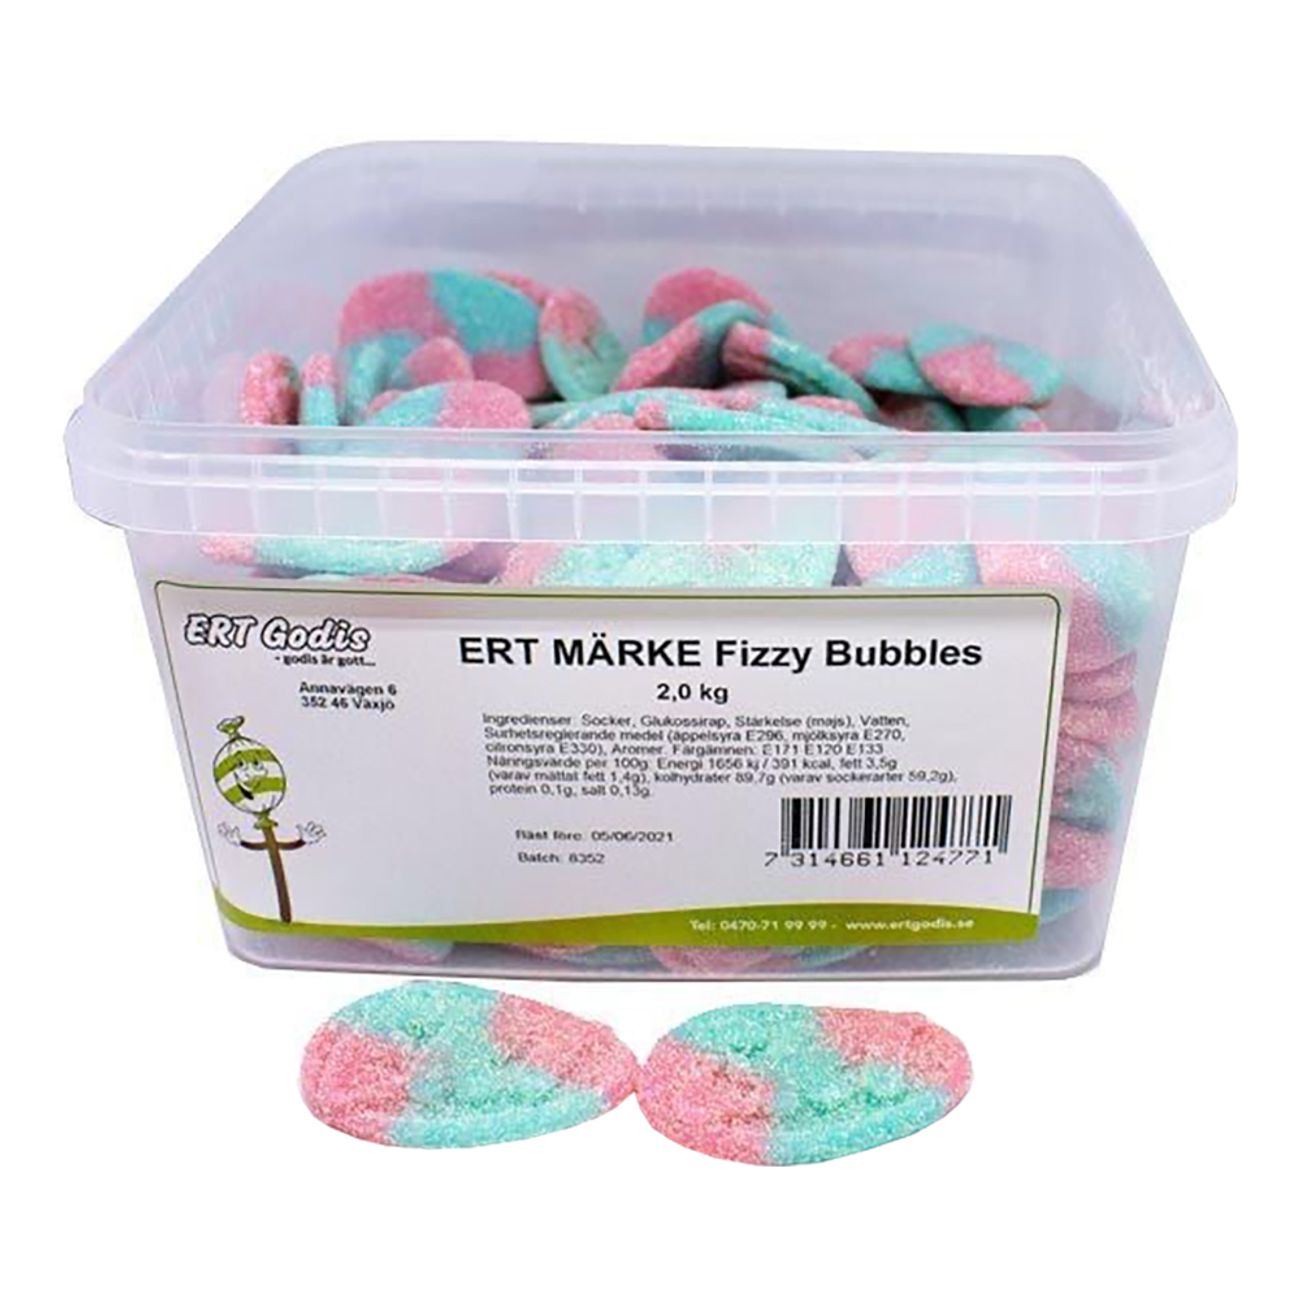 ert-marke-fizzy-bubbles-storpack-75327-2